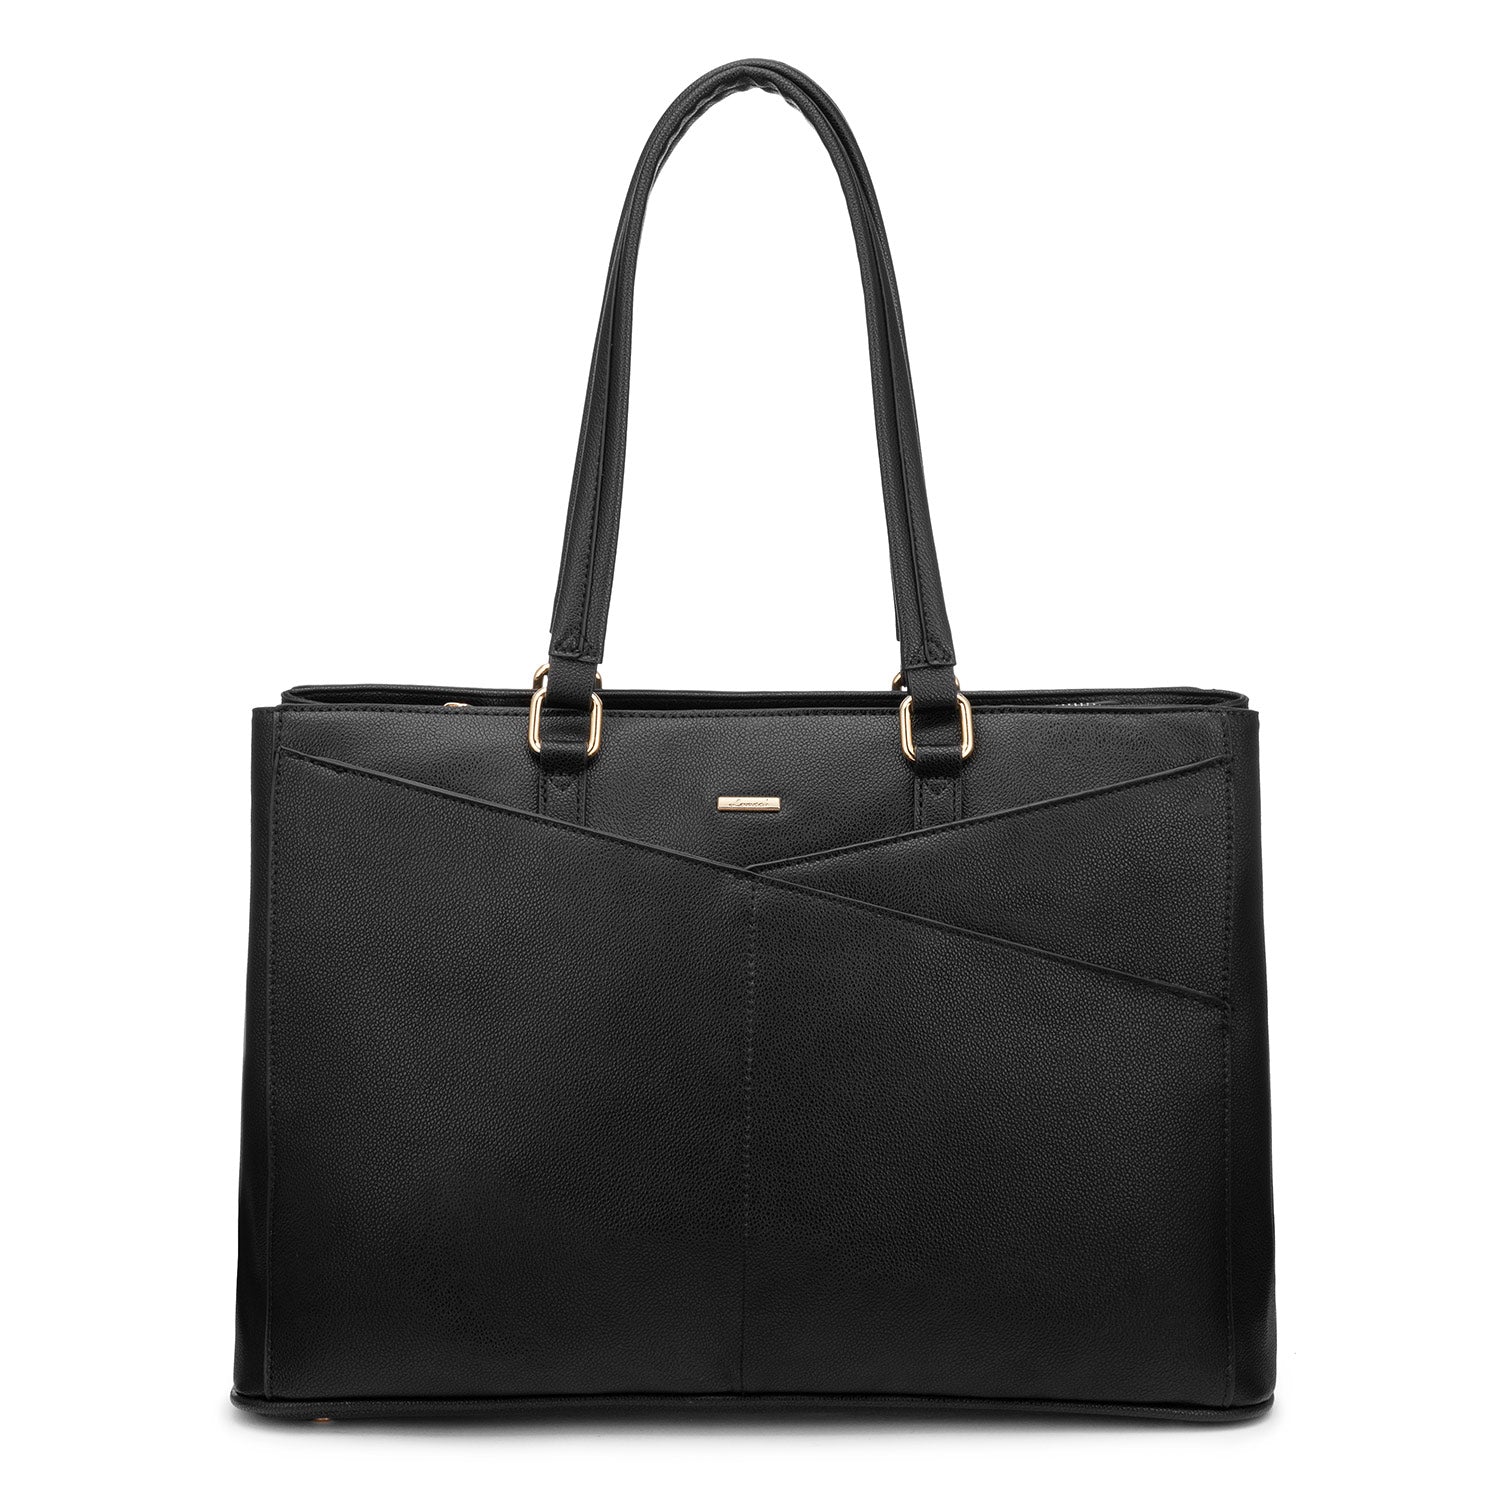 LOVEVOOK Laptop Tote Bag Work Bag for Women, Waterproof Fit 15.6 Inch